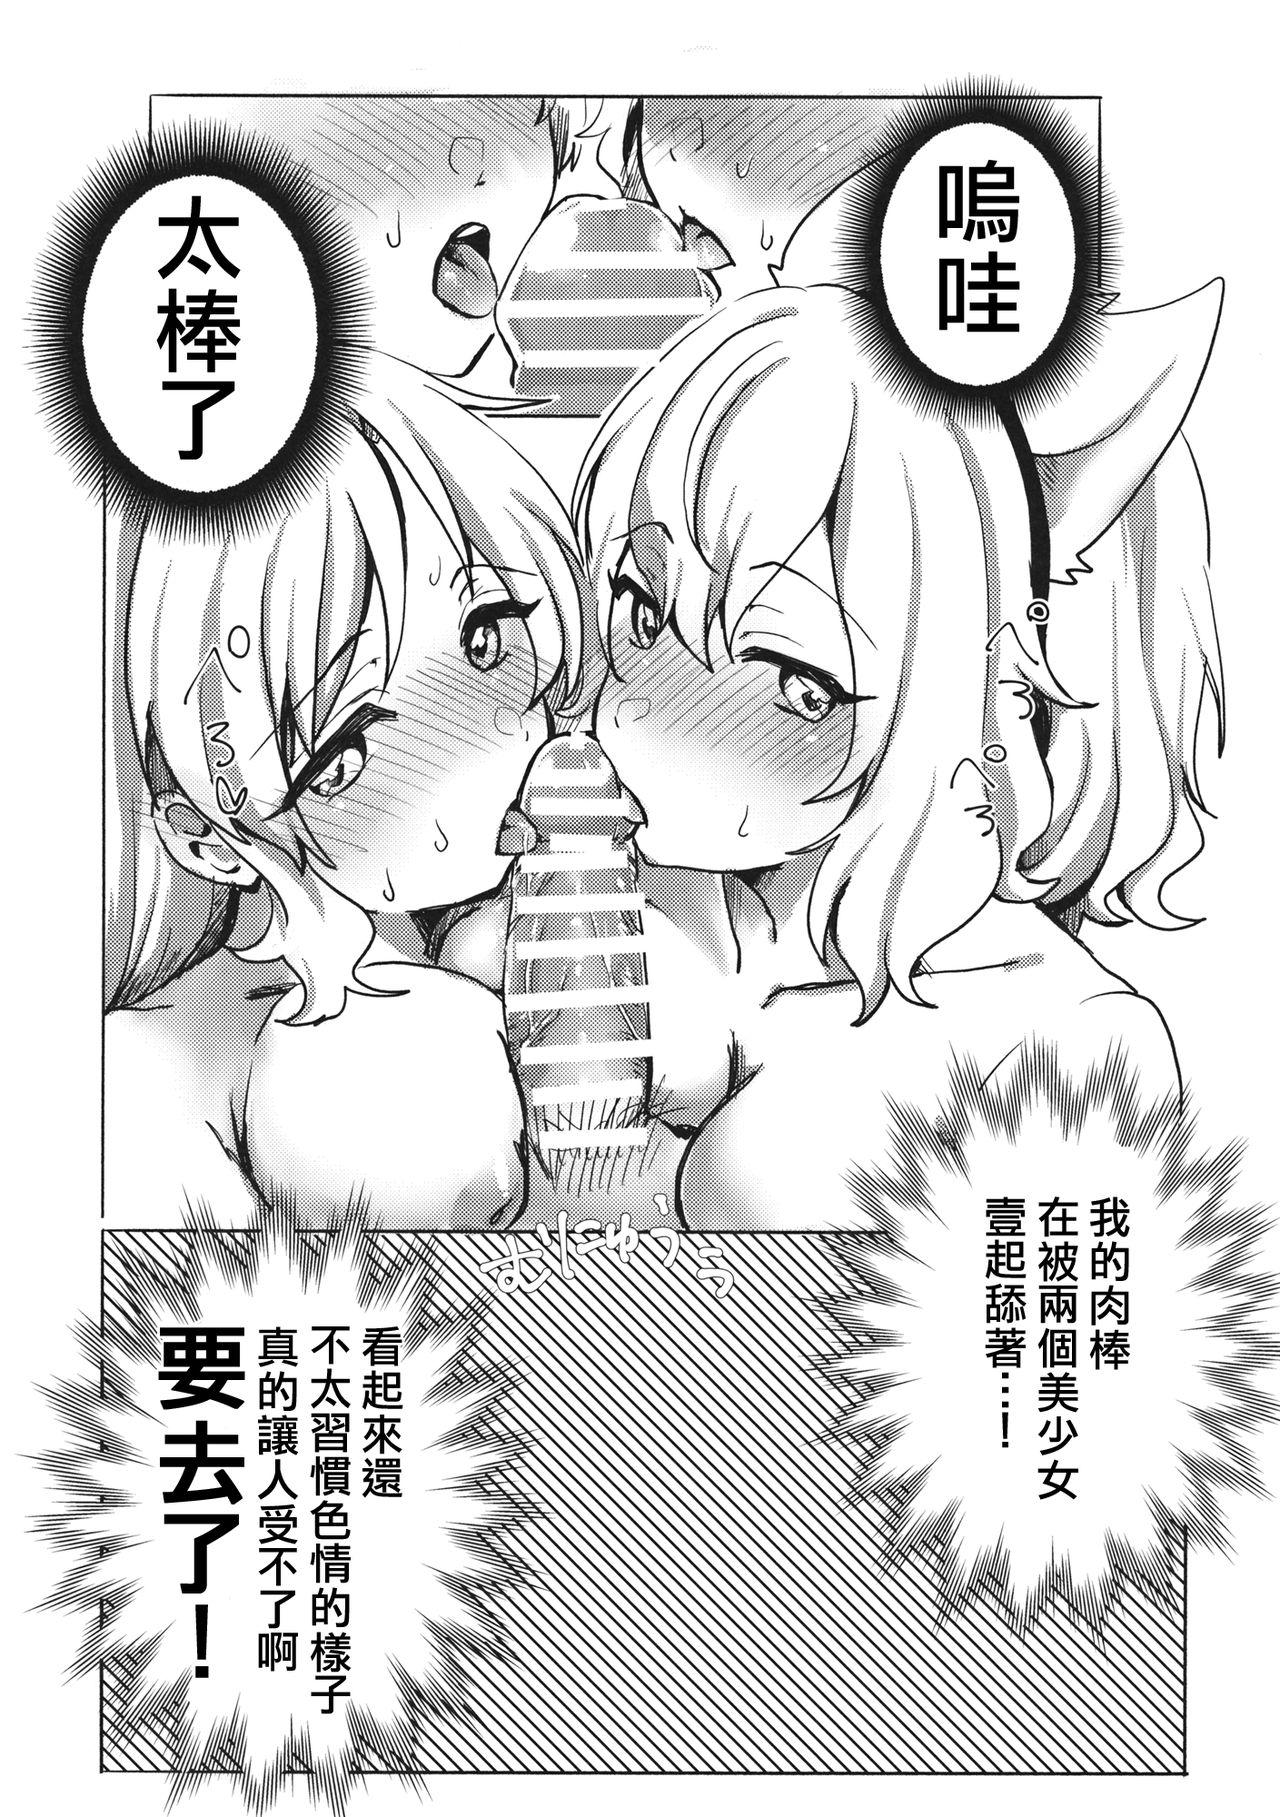 Cheerleader Miko vs Okina vs Darkrai - Touhou project Massage - Page 9